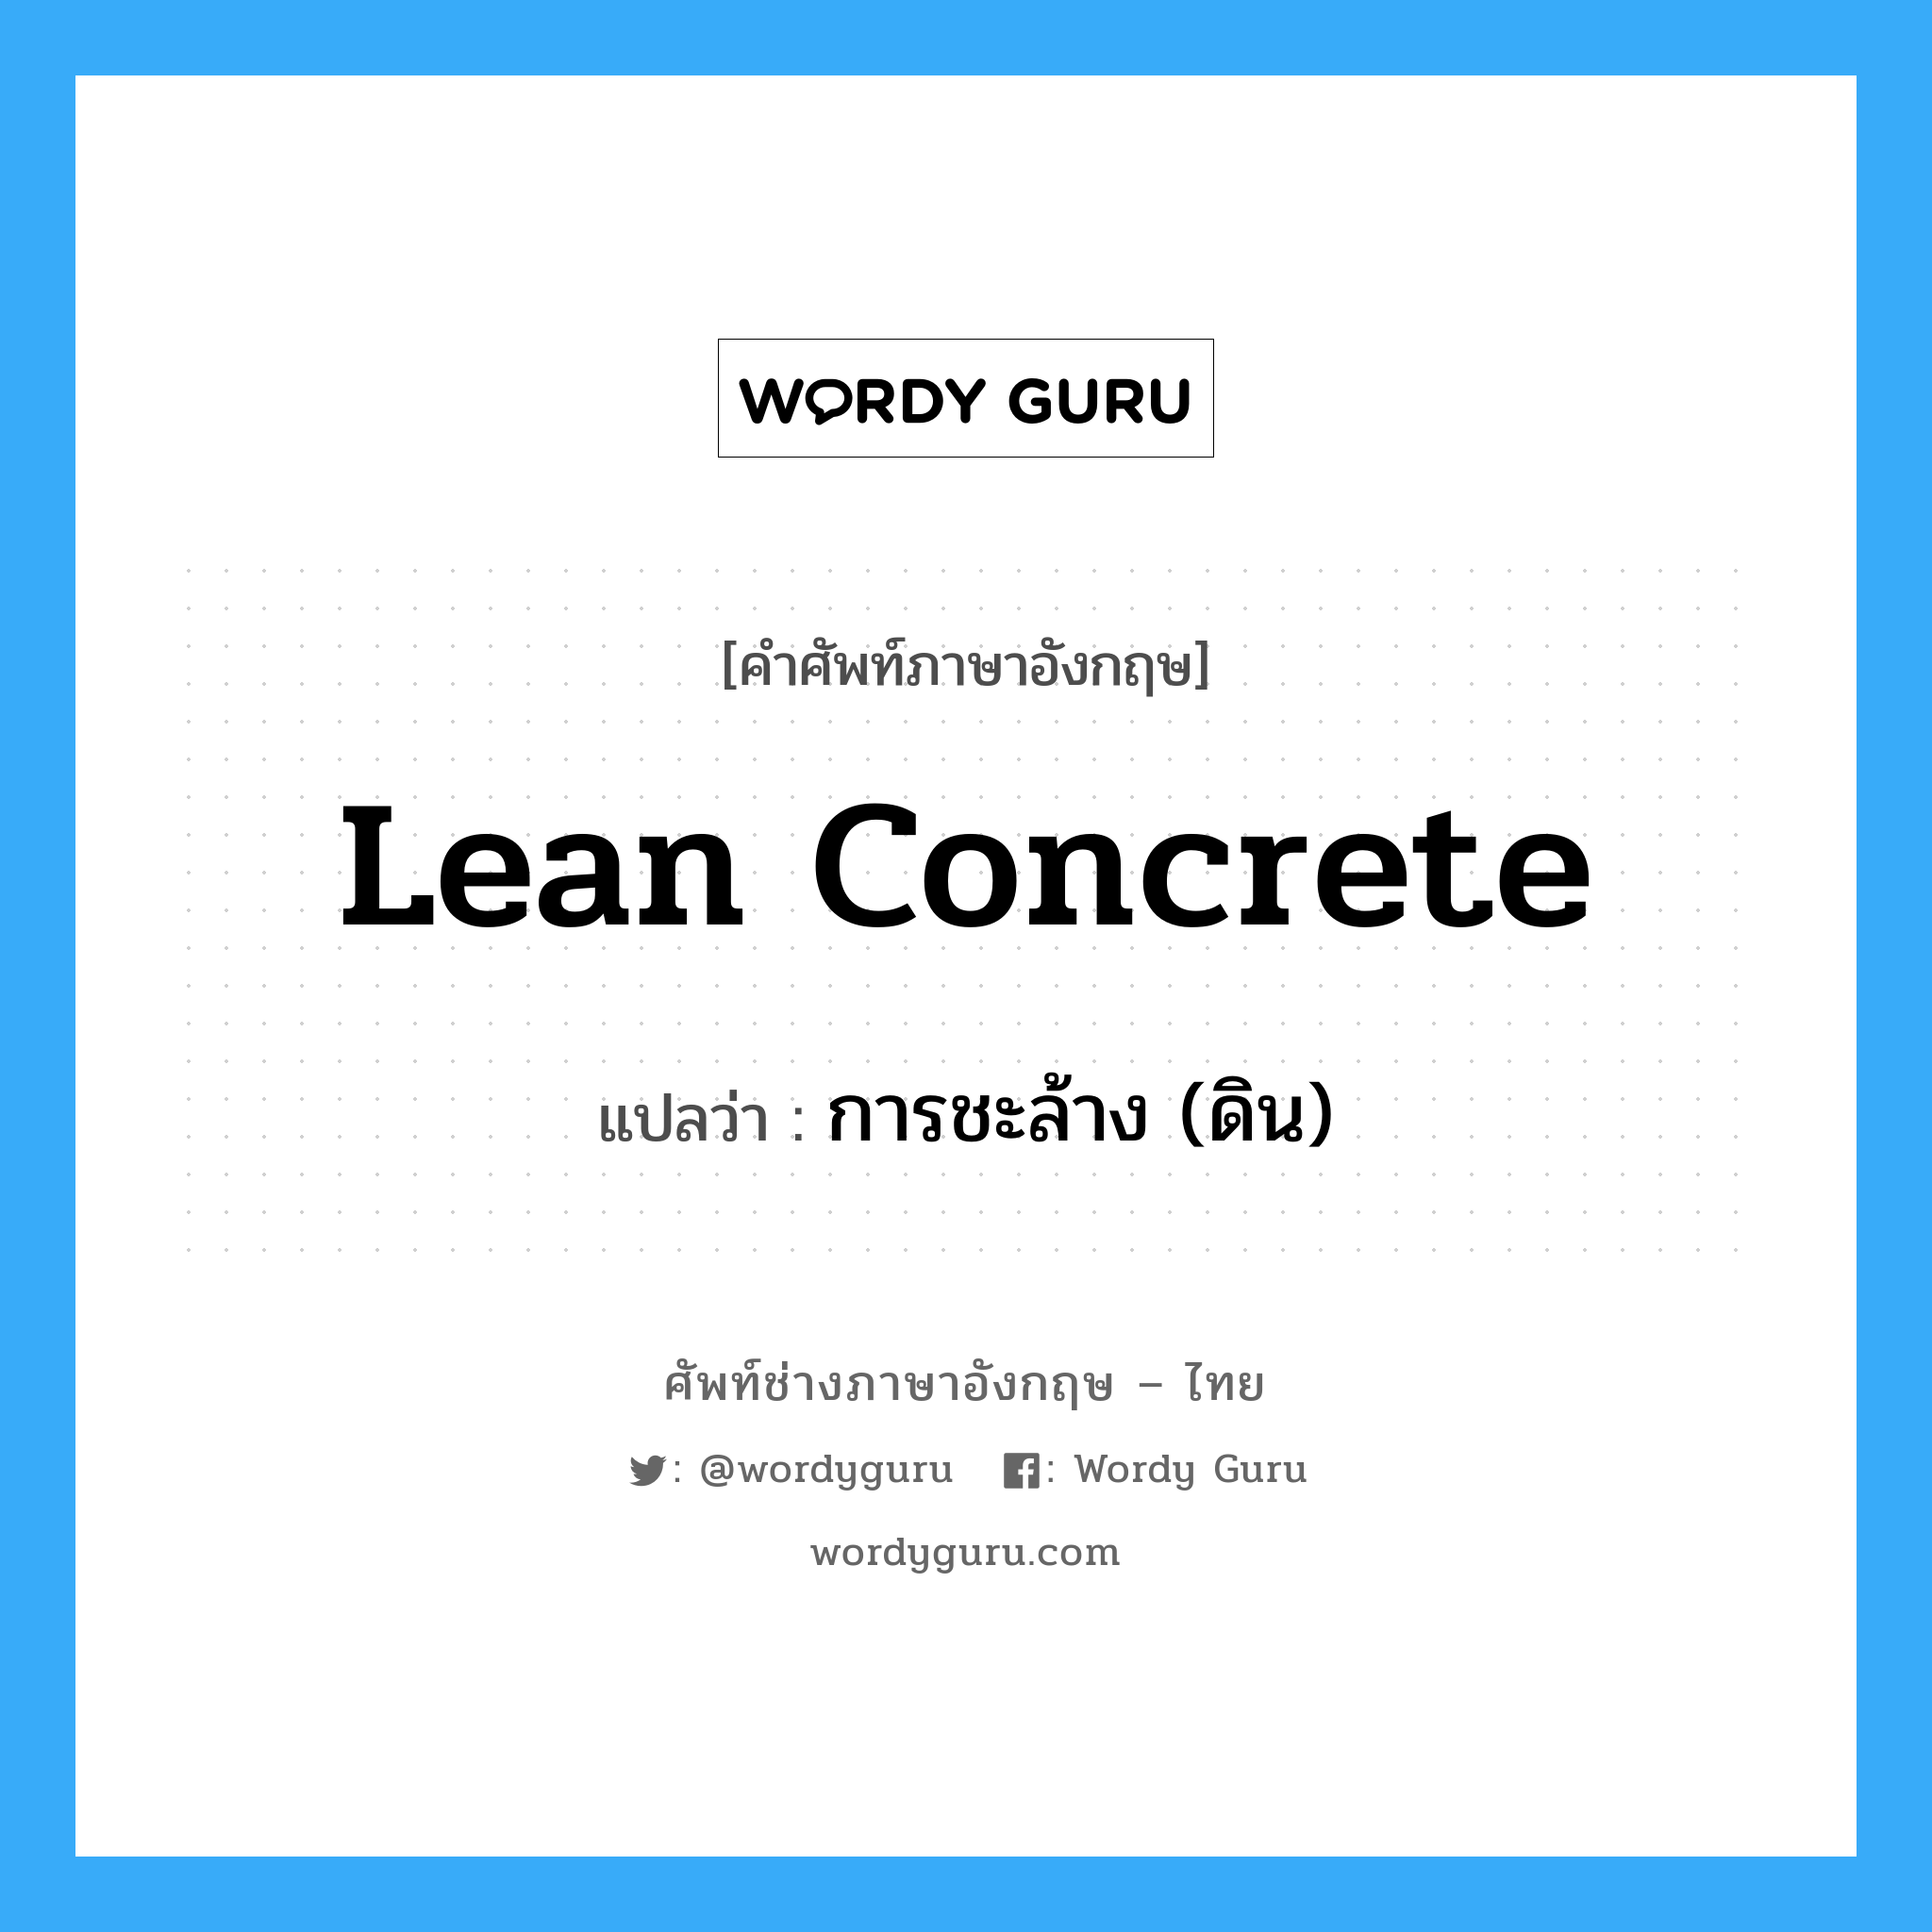 lean concrete แปลว่า?, คำศัพท์ช่างภาษาอังกฤษ - ไทย lean concrete คำศัพท์ภาษาอังกฤษ lean concrete แปลว่า การชะล้าง (ดิน)